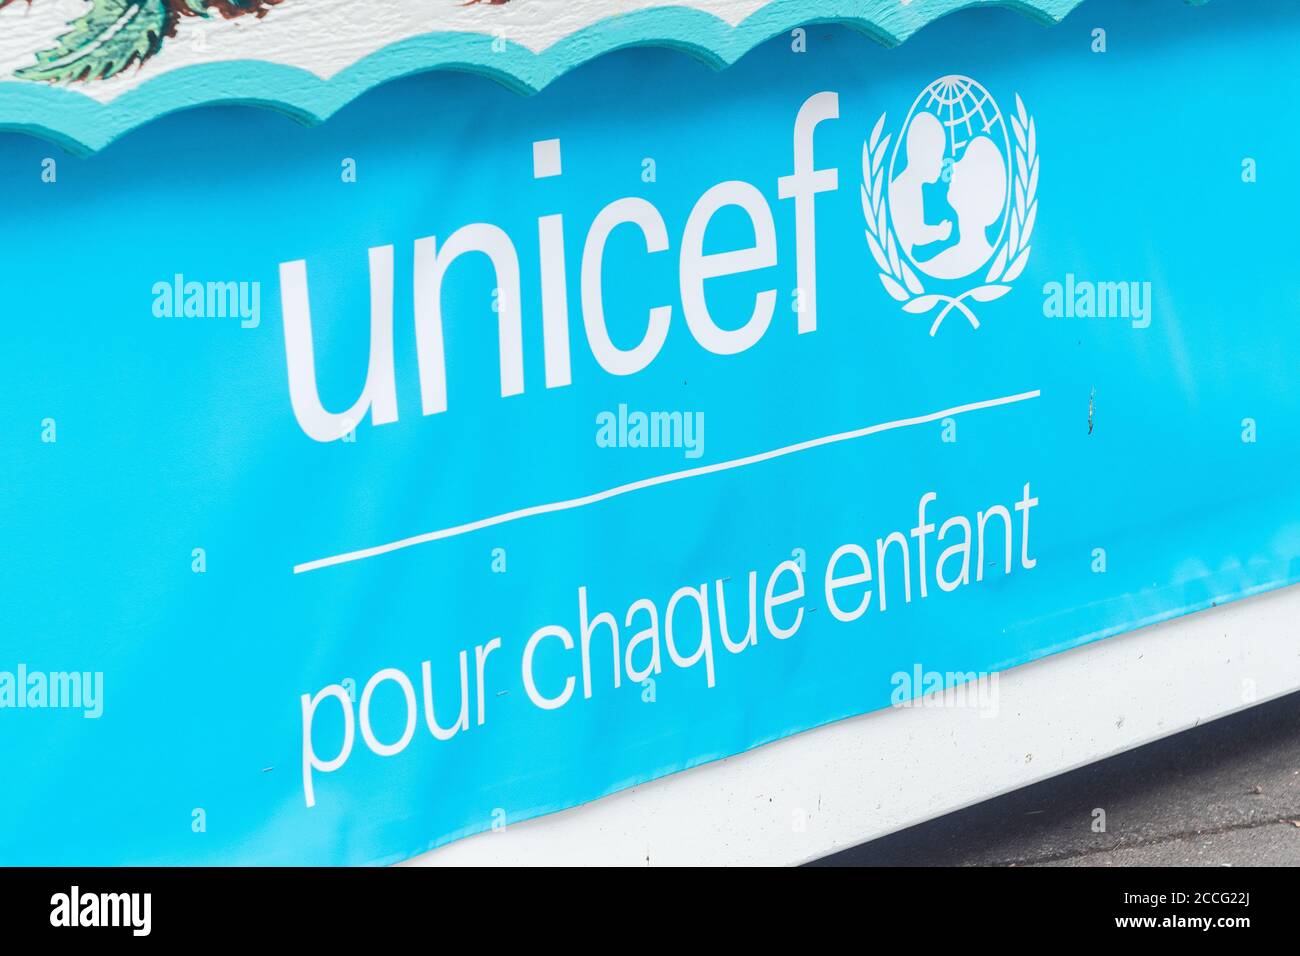 Blaues UNICEF-Banner, Paris, Frankreich. International Children's Emergency Fund der Vereinten Nationen. 'Pour chaque enfant' (für jedes Kind). Stockfoto